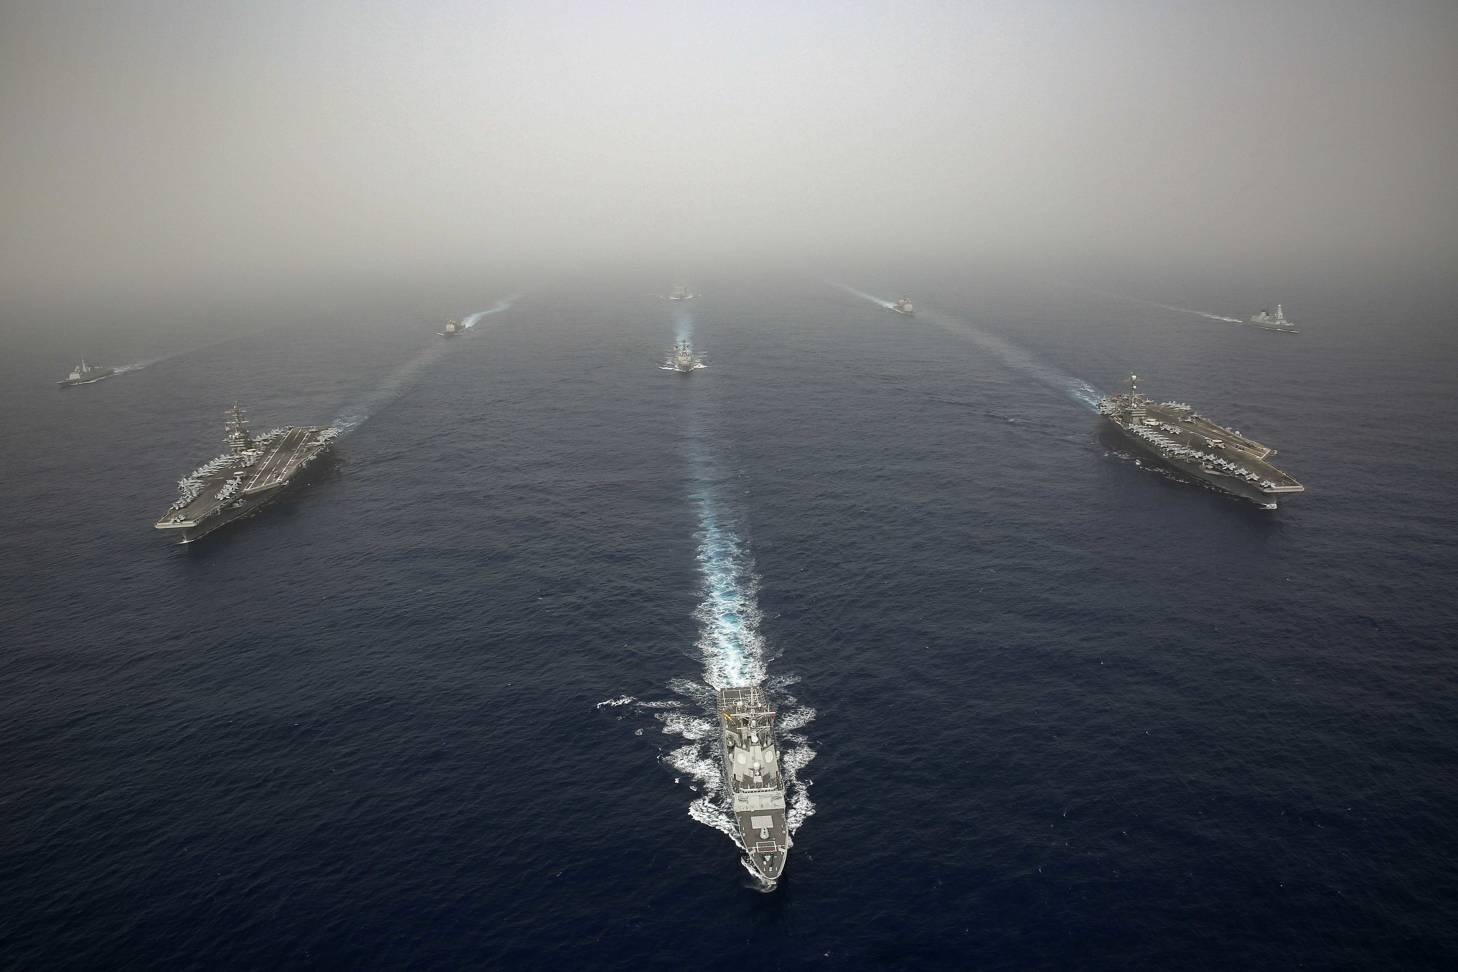 Estados Unidos despliega “100 mil toneladas de diplomacia internacional” en el Mediterráneo. ¿Rusia recibirá el mensaje?